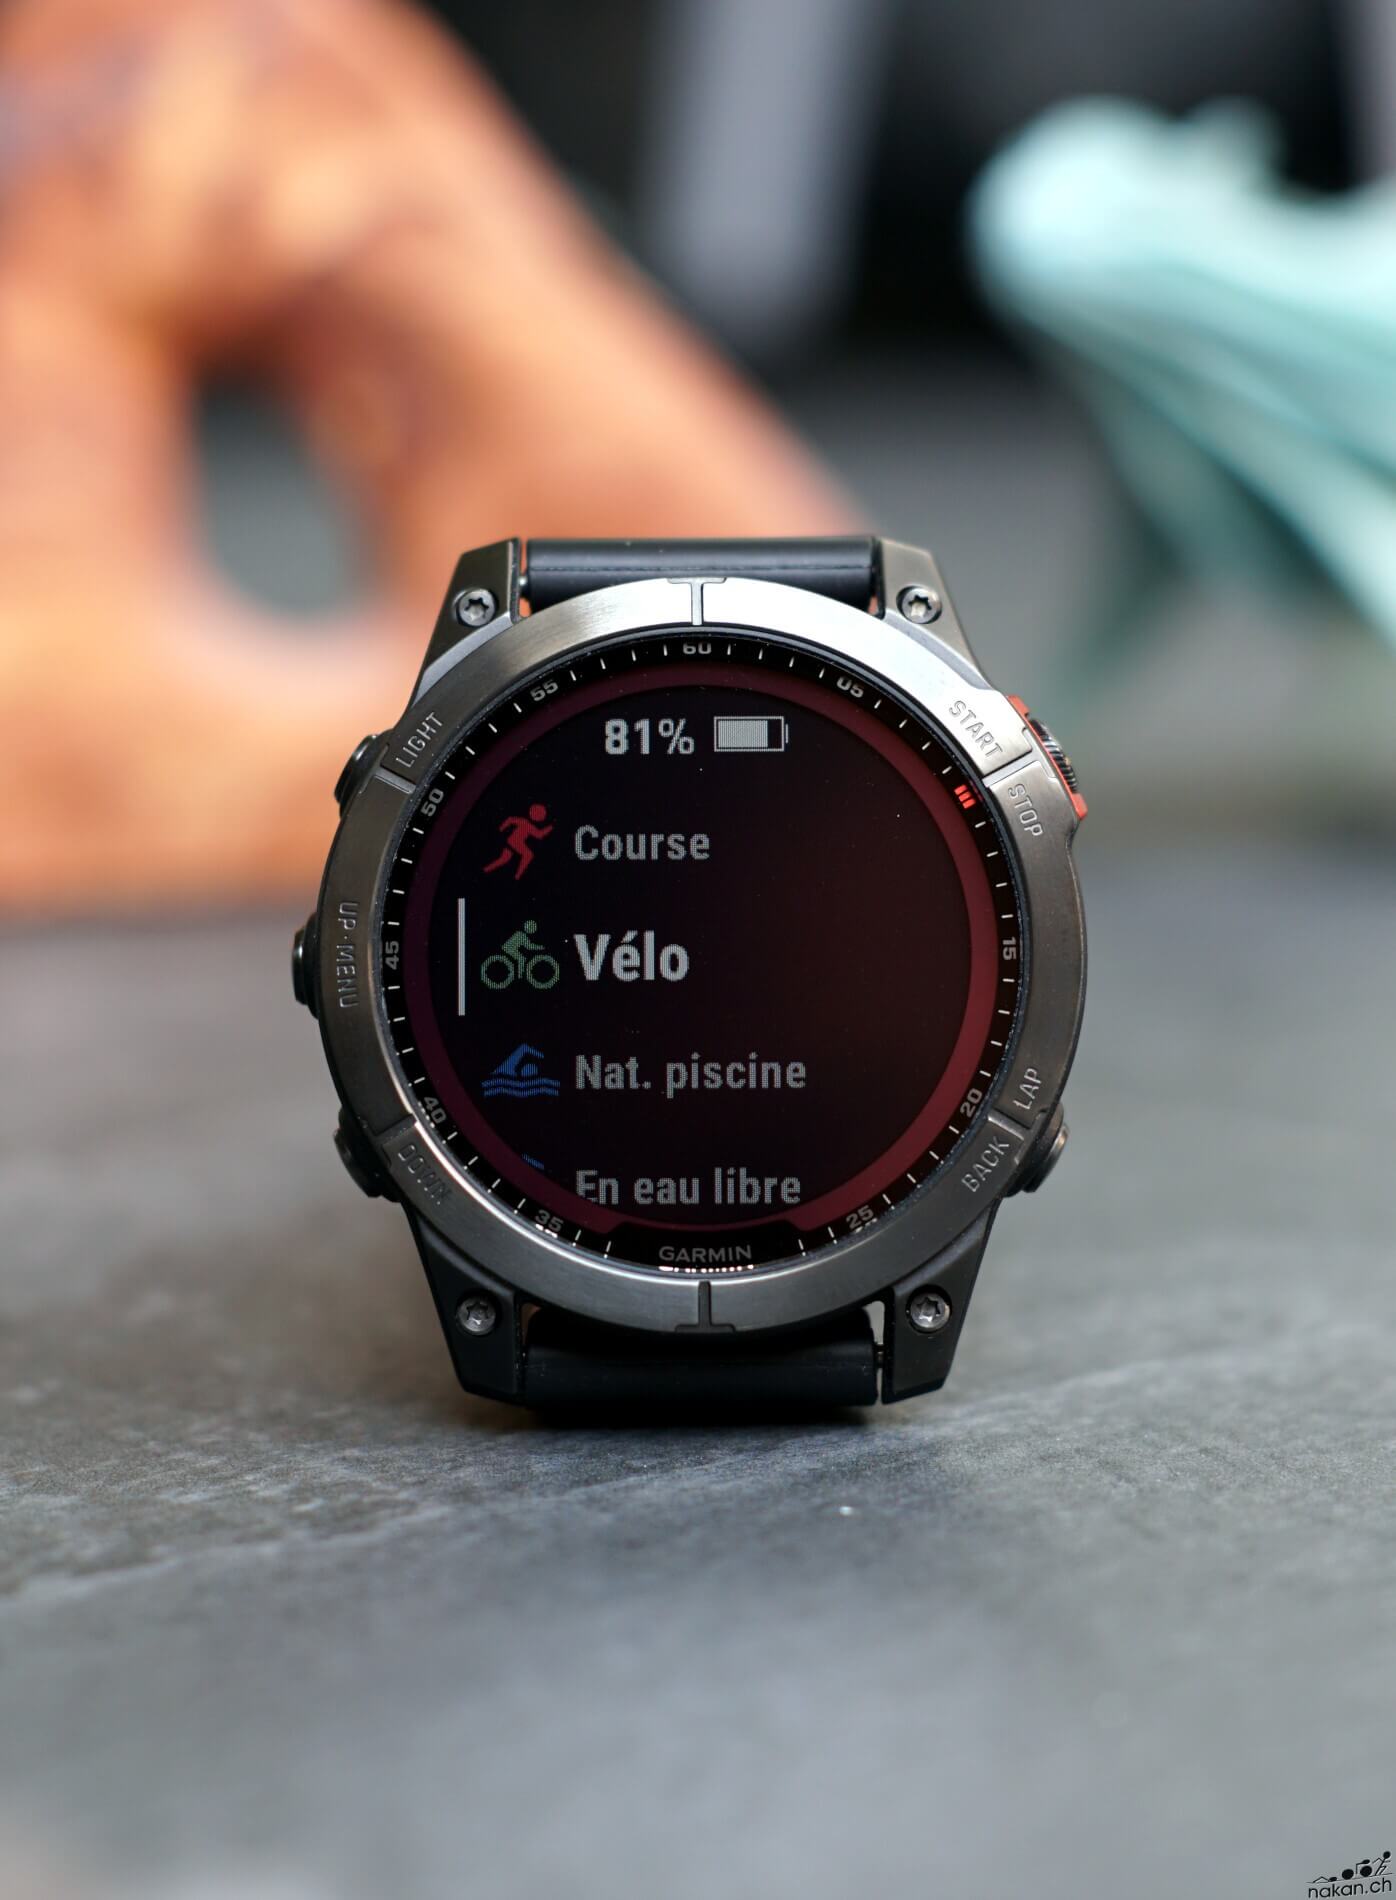 La montre de sport Epix de Garmin renaît en Gen 2 avec un écran Amoled -  Les Numériques